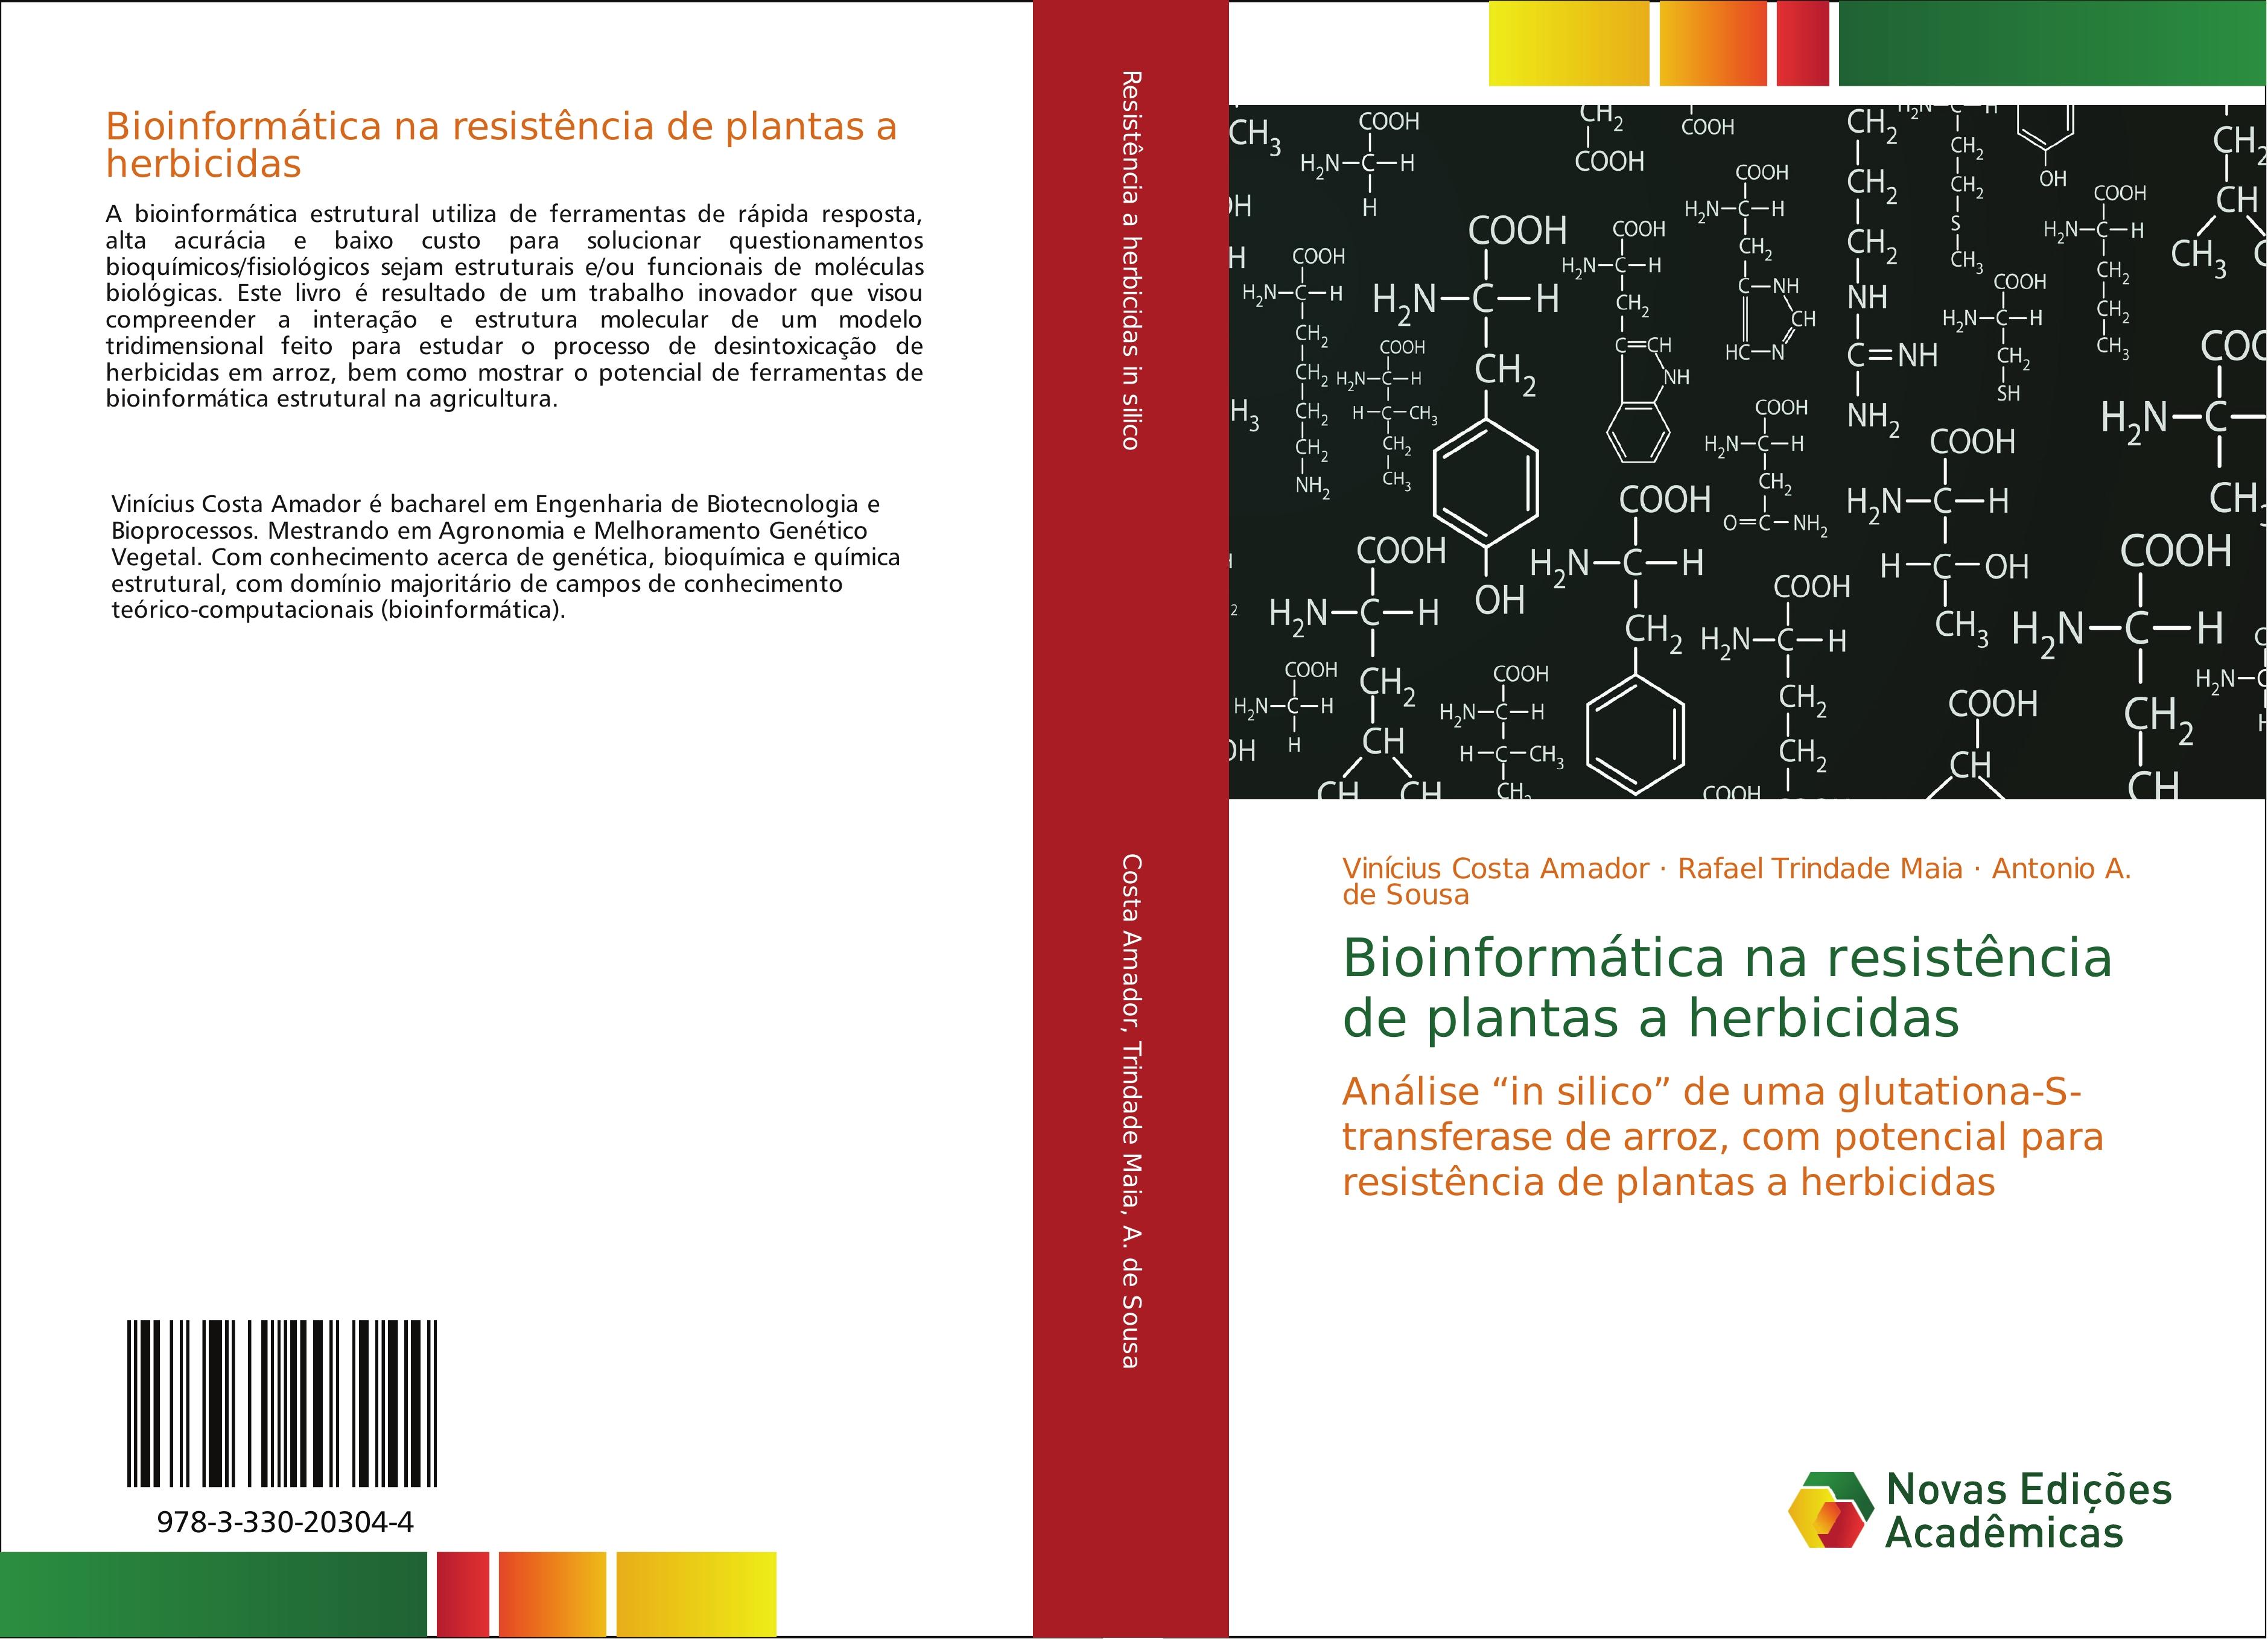 Bioinformática na resistência de plantas a herbicidas - Vinícius Costa Amador Rafael Trindade Maia Antonio A. de Sousa